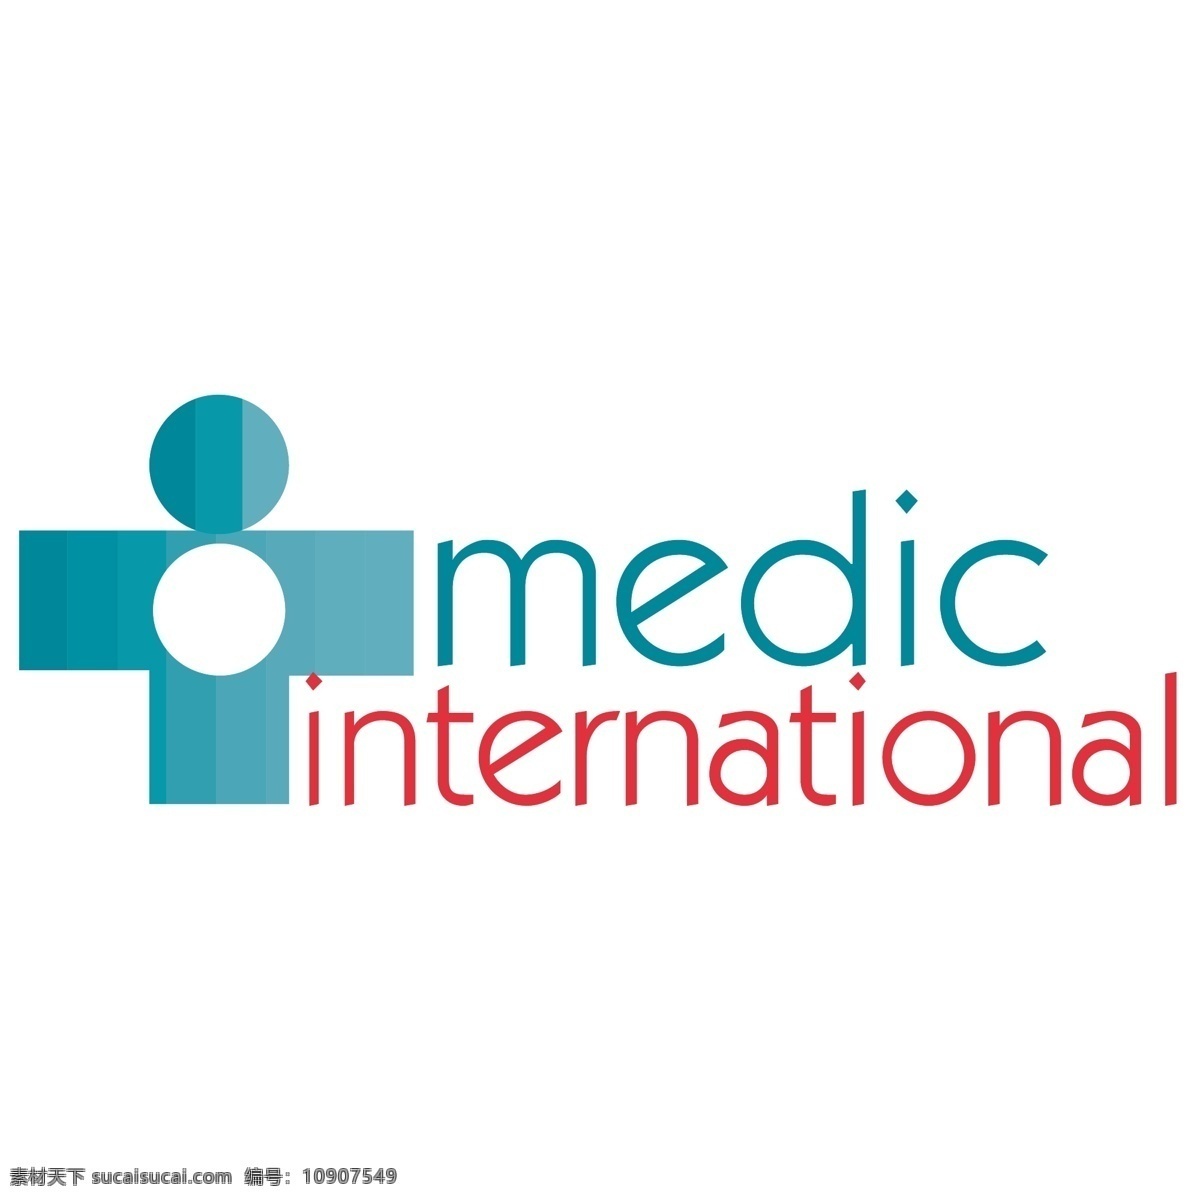 军医 军医国际 国际 医疗 标志 向量 向量医疗国际 医疗国际标志 国际艺术设计 国际图形设计 国际向量 矢量图 建筑家居